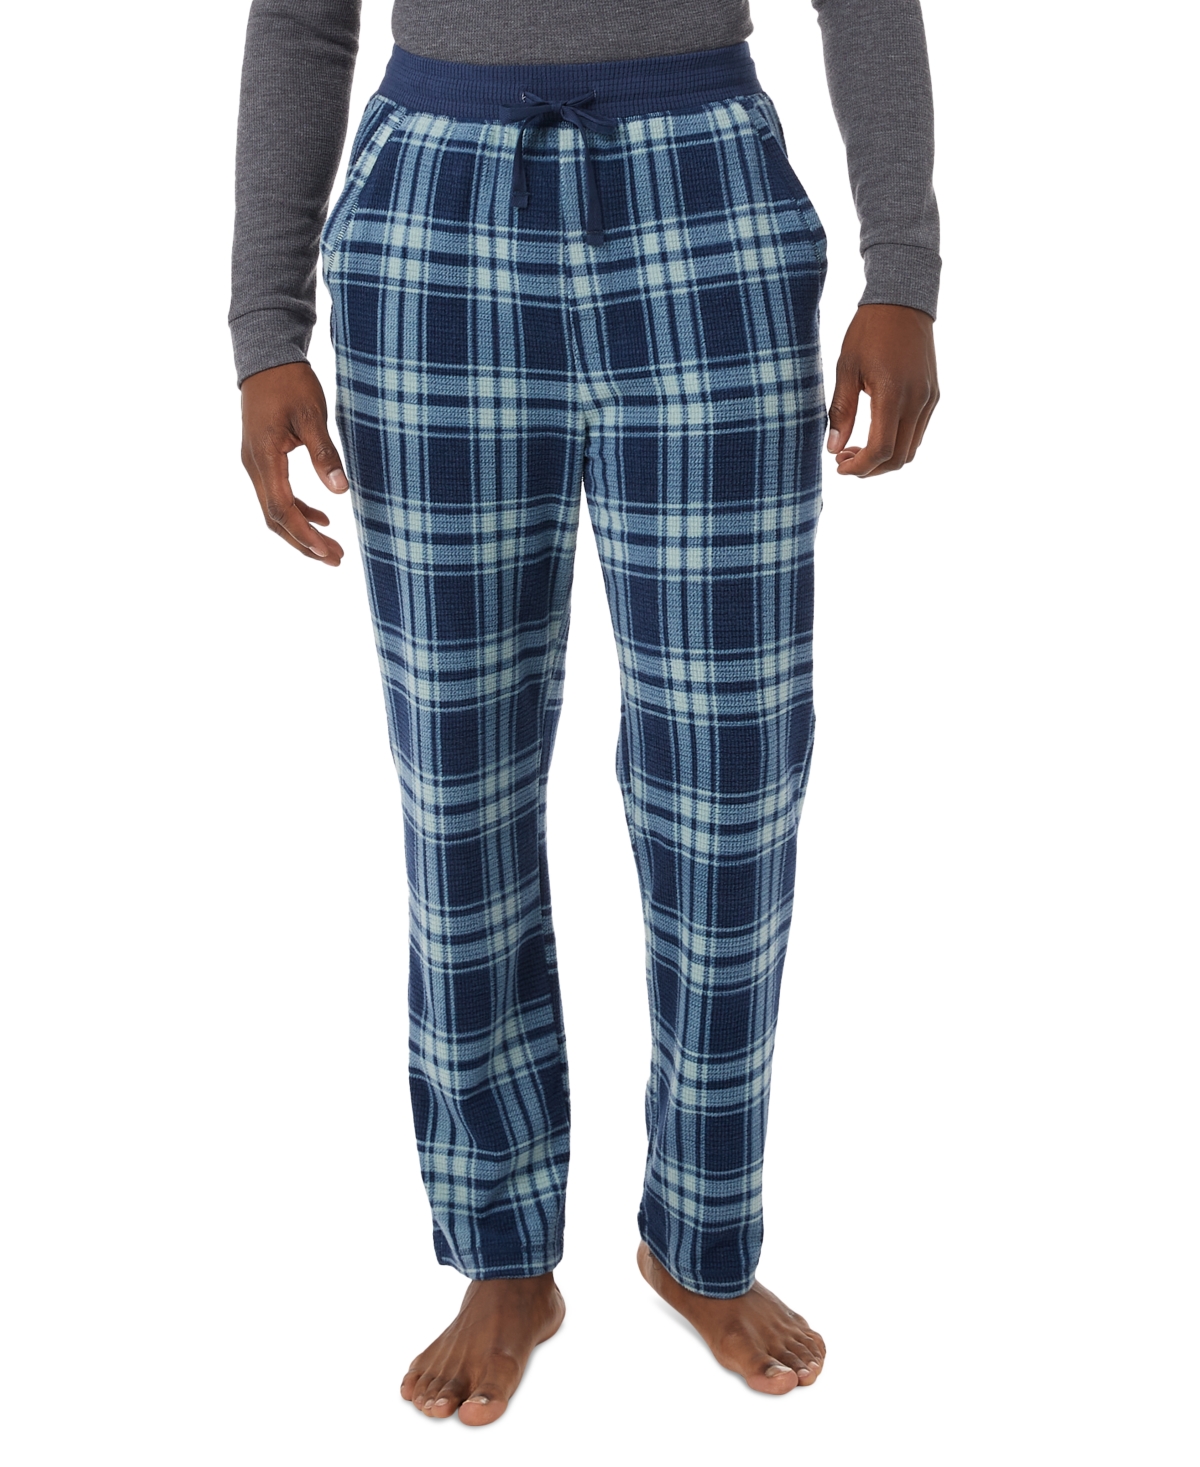 Men's Tapered Twill Plaid Pajama Pants - Tartan Blue